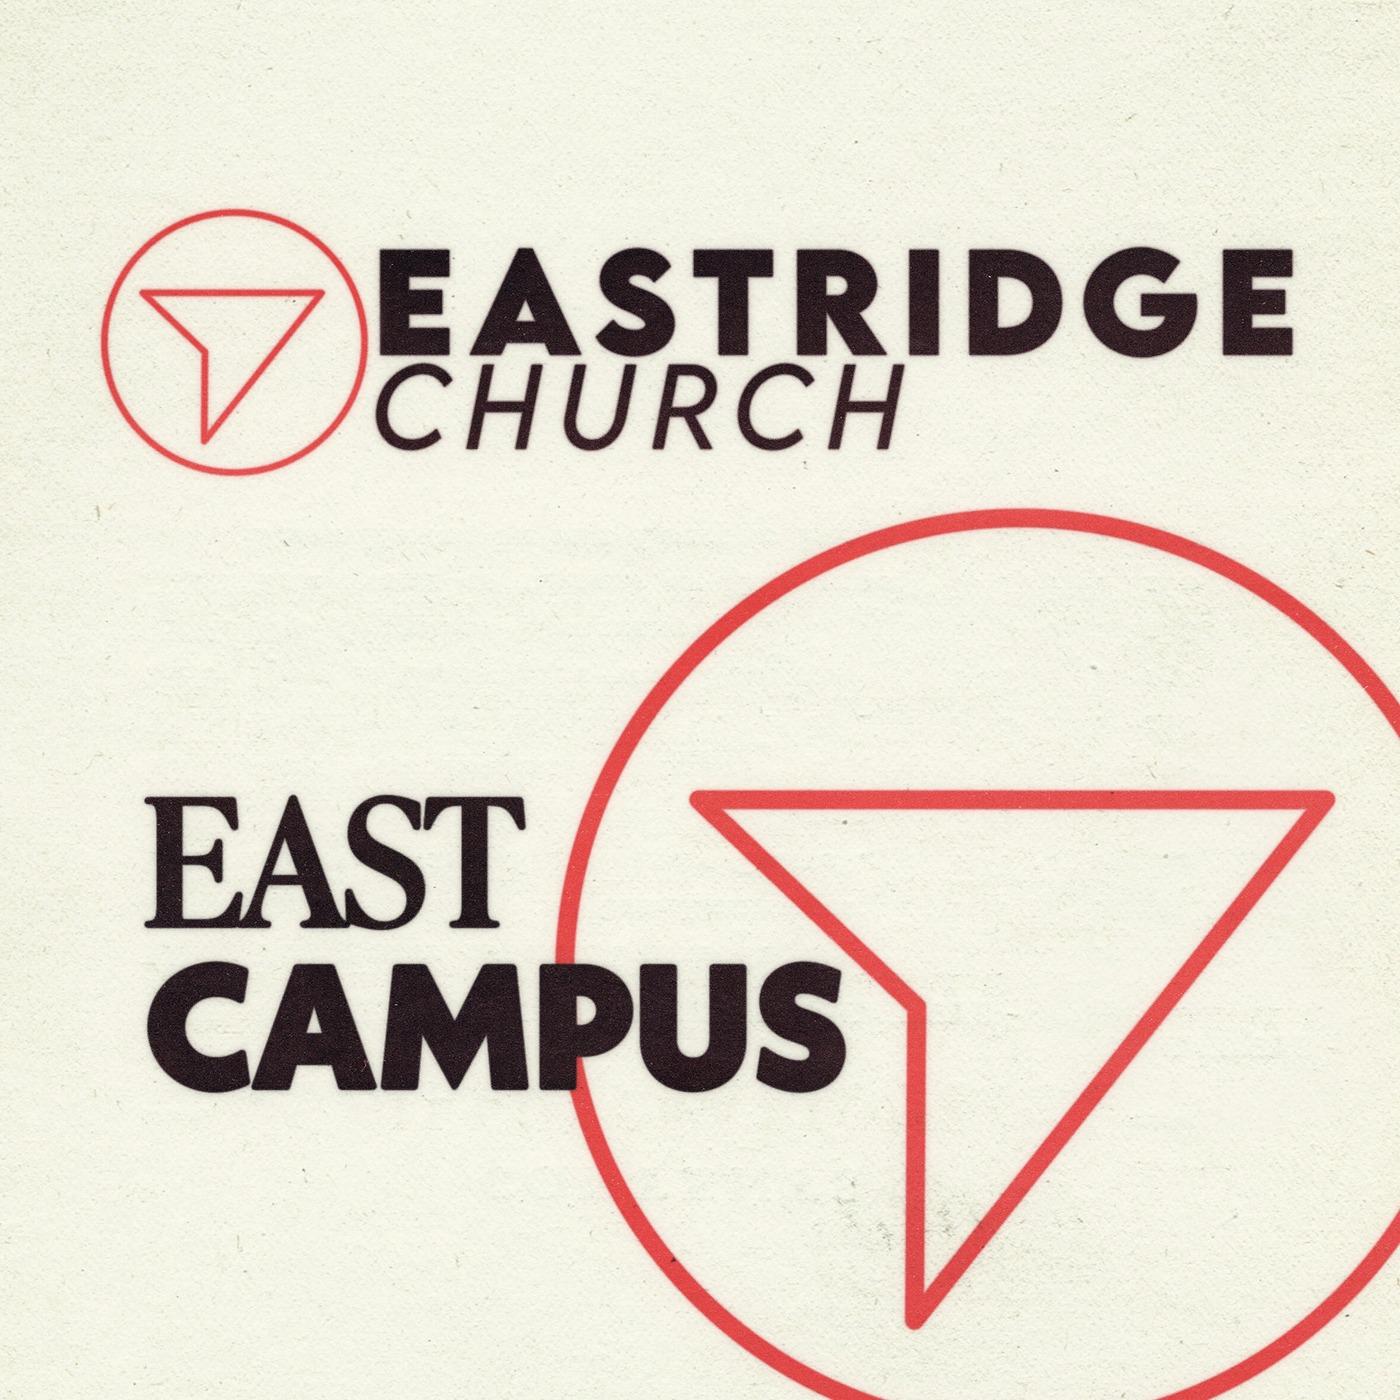 Eastridge Church East Campus